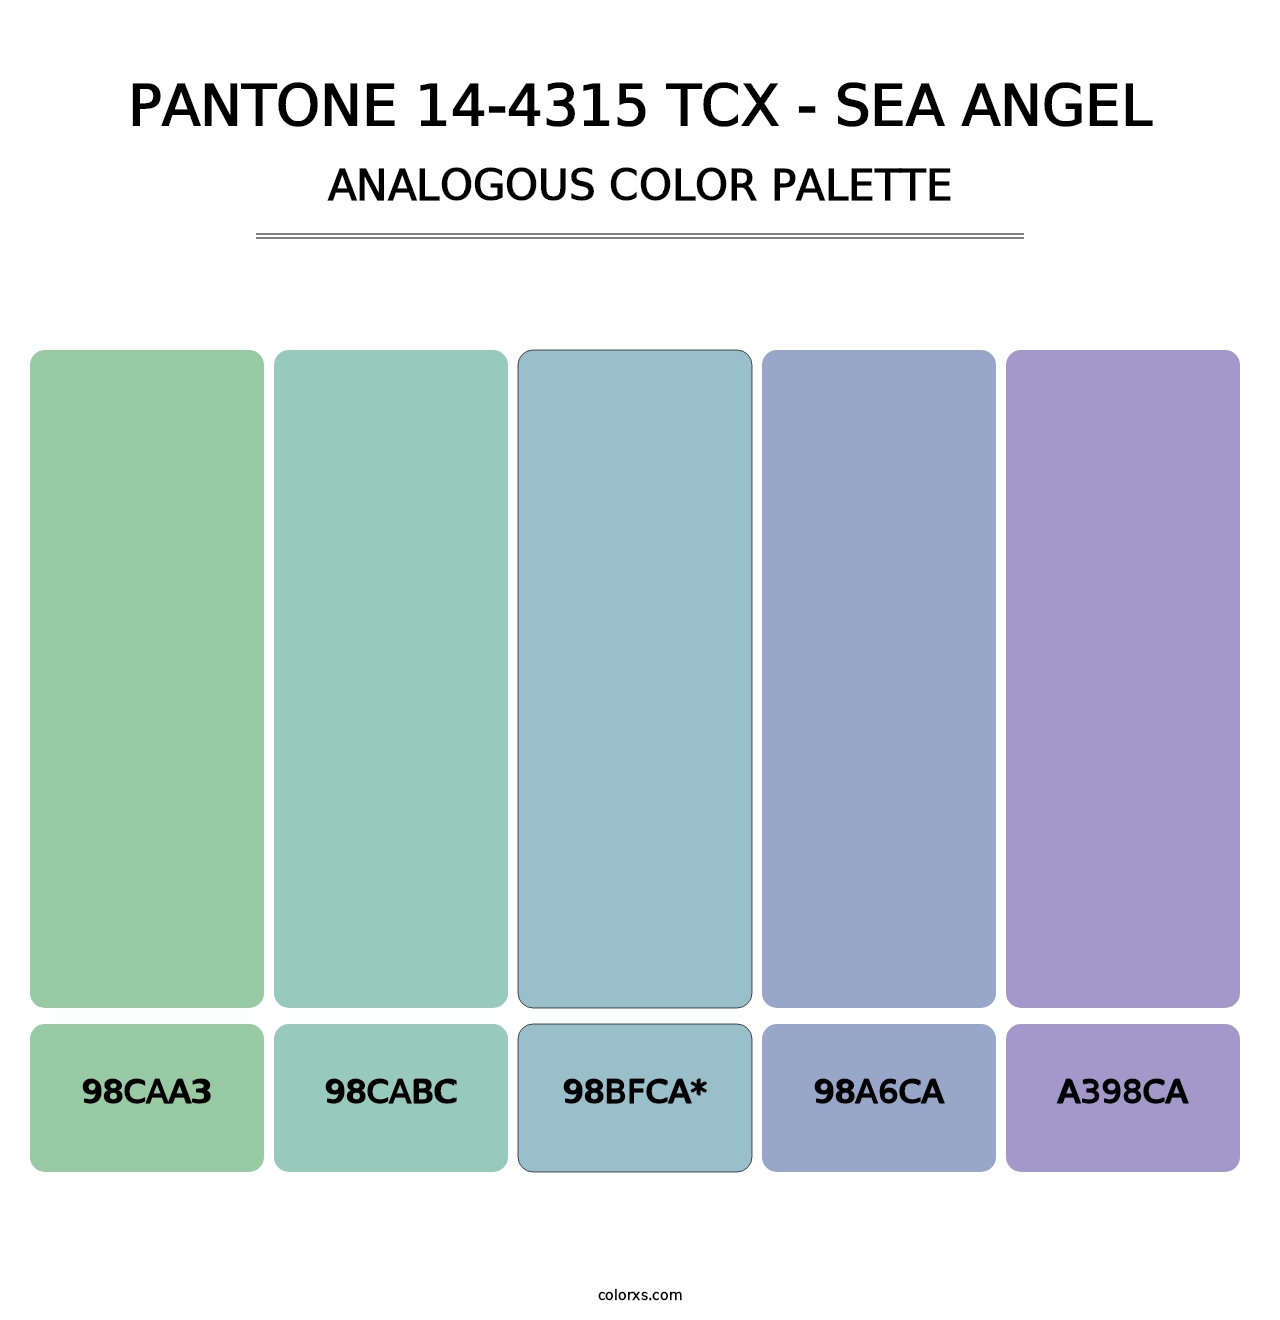 PANTONE 14-4315 TCX - Sea Angel - Analogous Color Palette